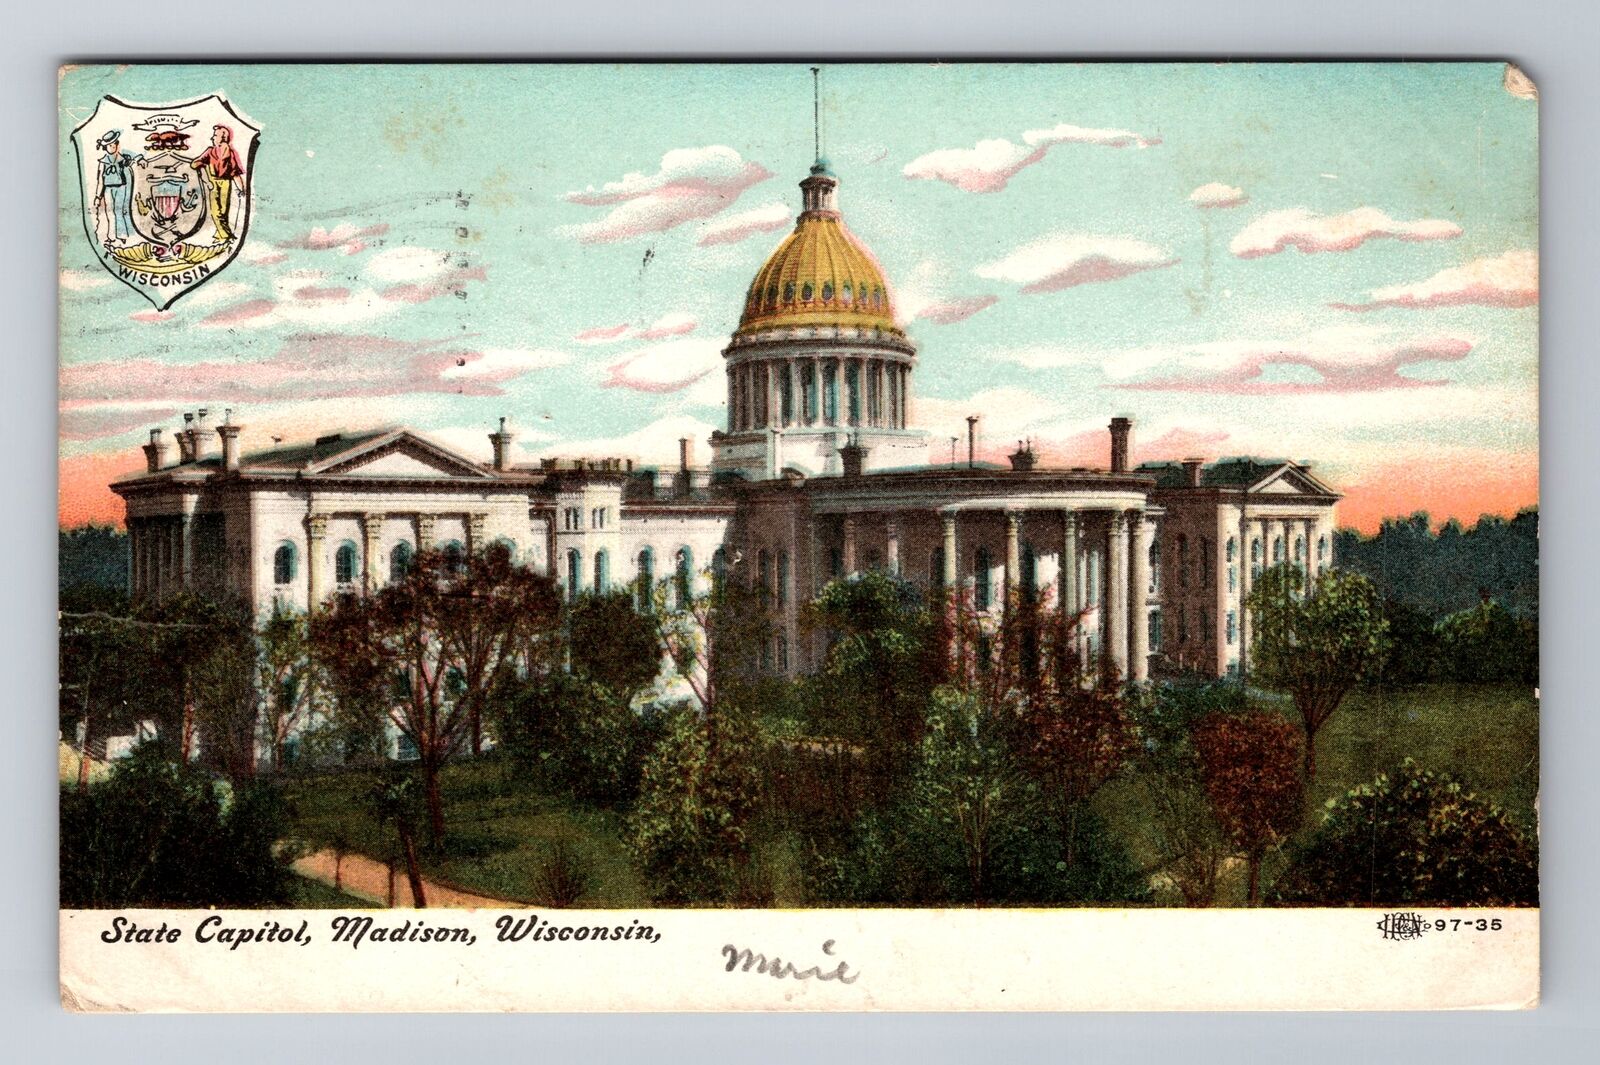 Madison WI-Wisconsin, State Capitol, Antique, Vintage c1909 Souvenir Postcard